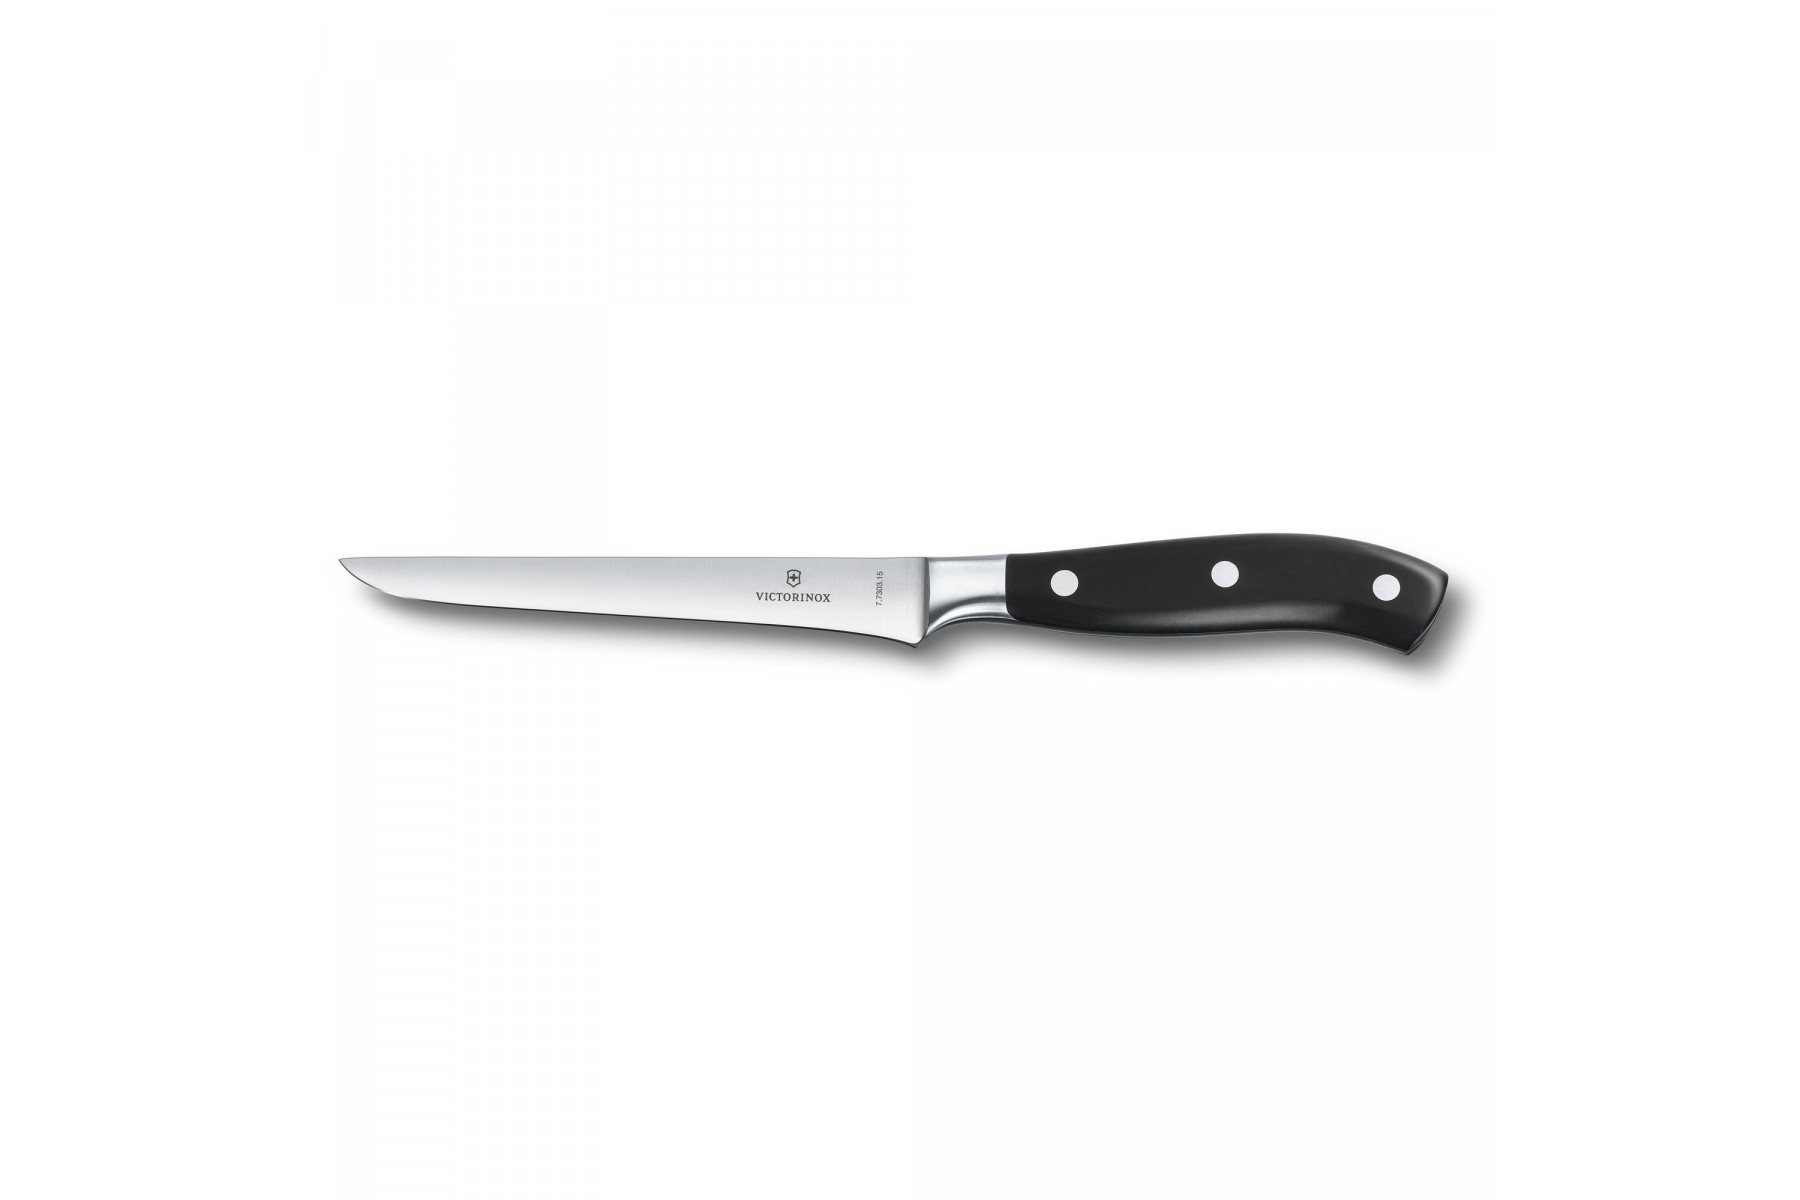 Couteau à désosser Victorinox Grand Maître 15 cm - Manche noir